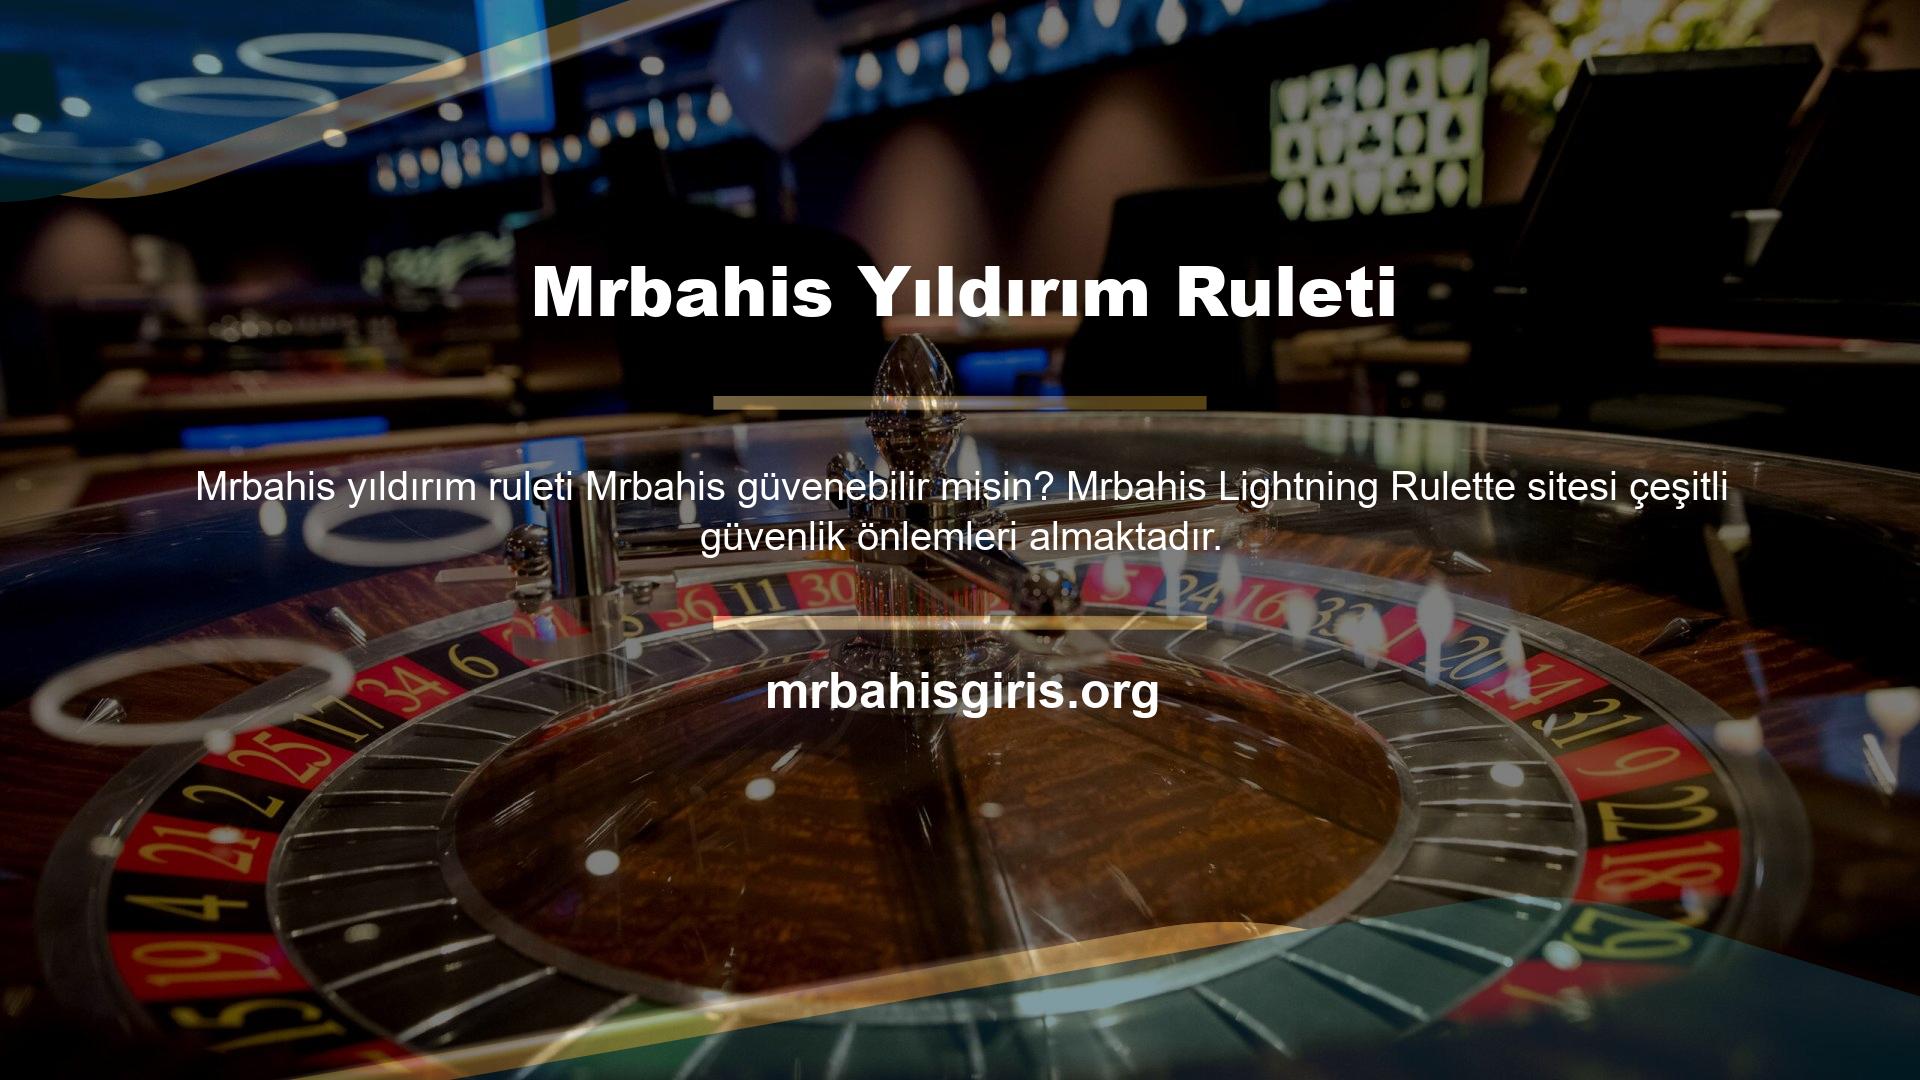 Mrbahis Lightning Rulette Türkiye Mi Lightning Rulette Rulet oyunları, tüm canlı bahisler, casino oyunları ve tüm Mrbahis web sitesi hizmetleri, yasal süreç uyarınca bu Mrbahis Lightning Rulette'e tabidir